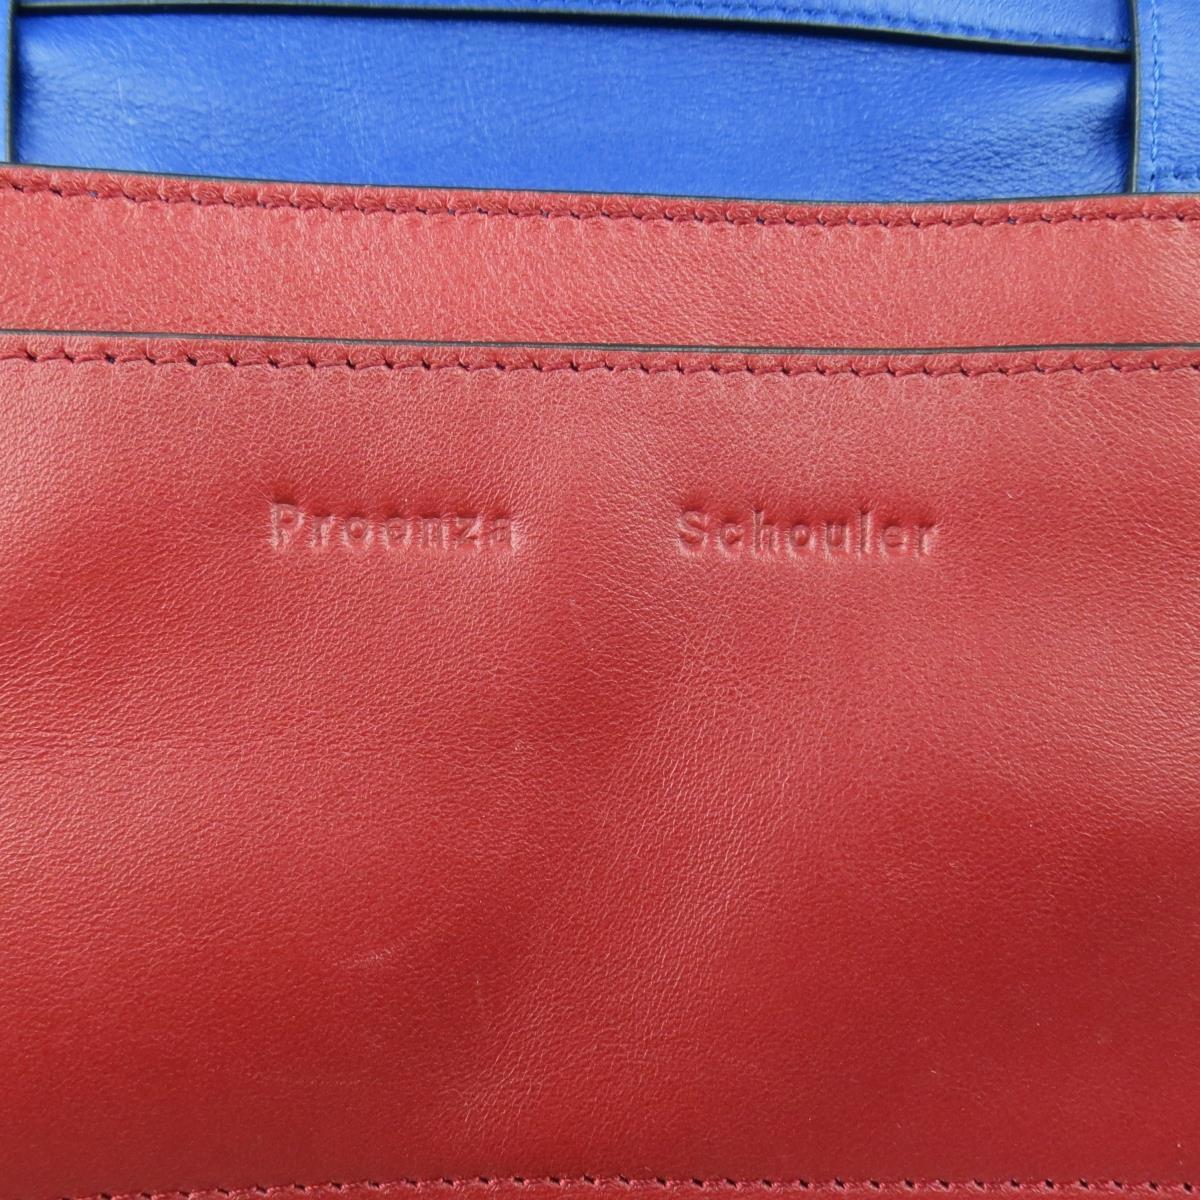 PROENZA SCHOULER Red & Blue Color Block Leather Shoulder Bag For Sale 6